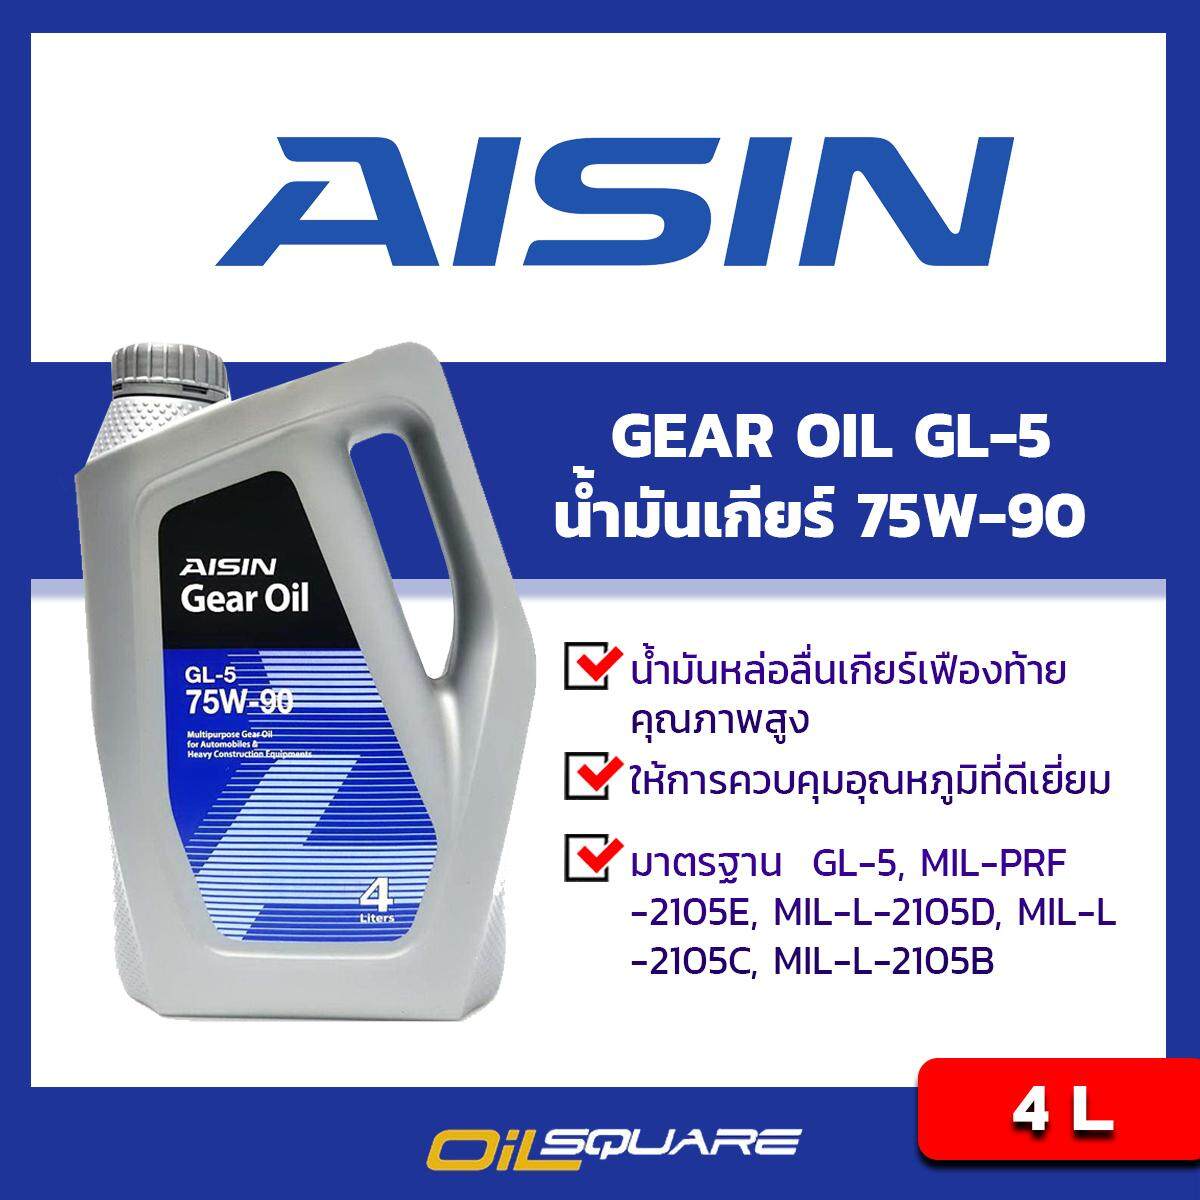 ไอชิน น้ำมันเกียร์ จีแอล5 AISIN Gear Oil SAE 75W-90 API GL-5 ขนาด 4 ลิตร l น้ำมันเกียร์ธรรมดา MT Oilsqaure ออยสแควร์